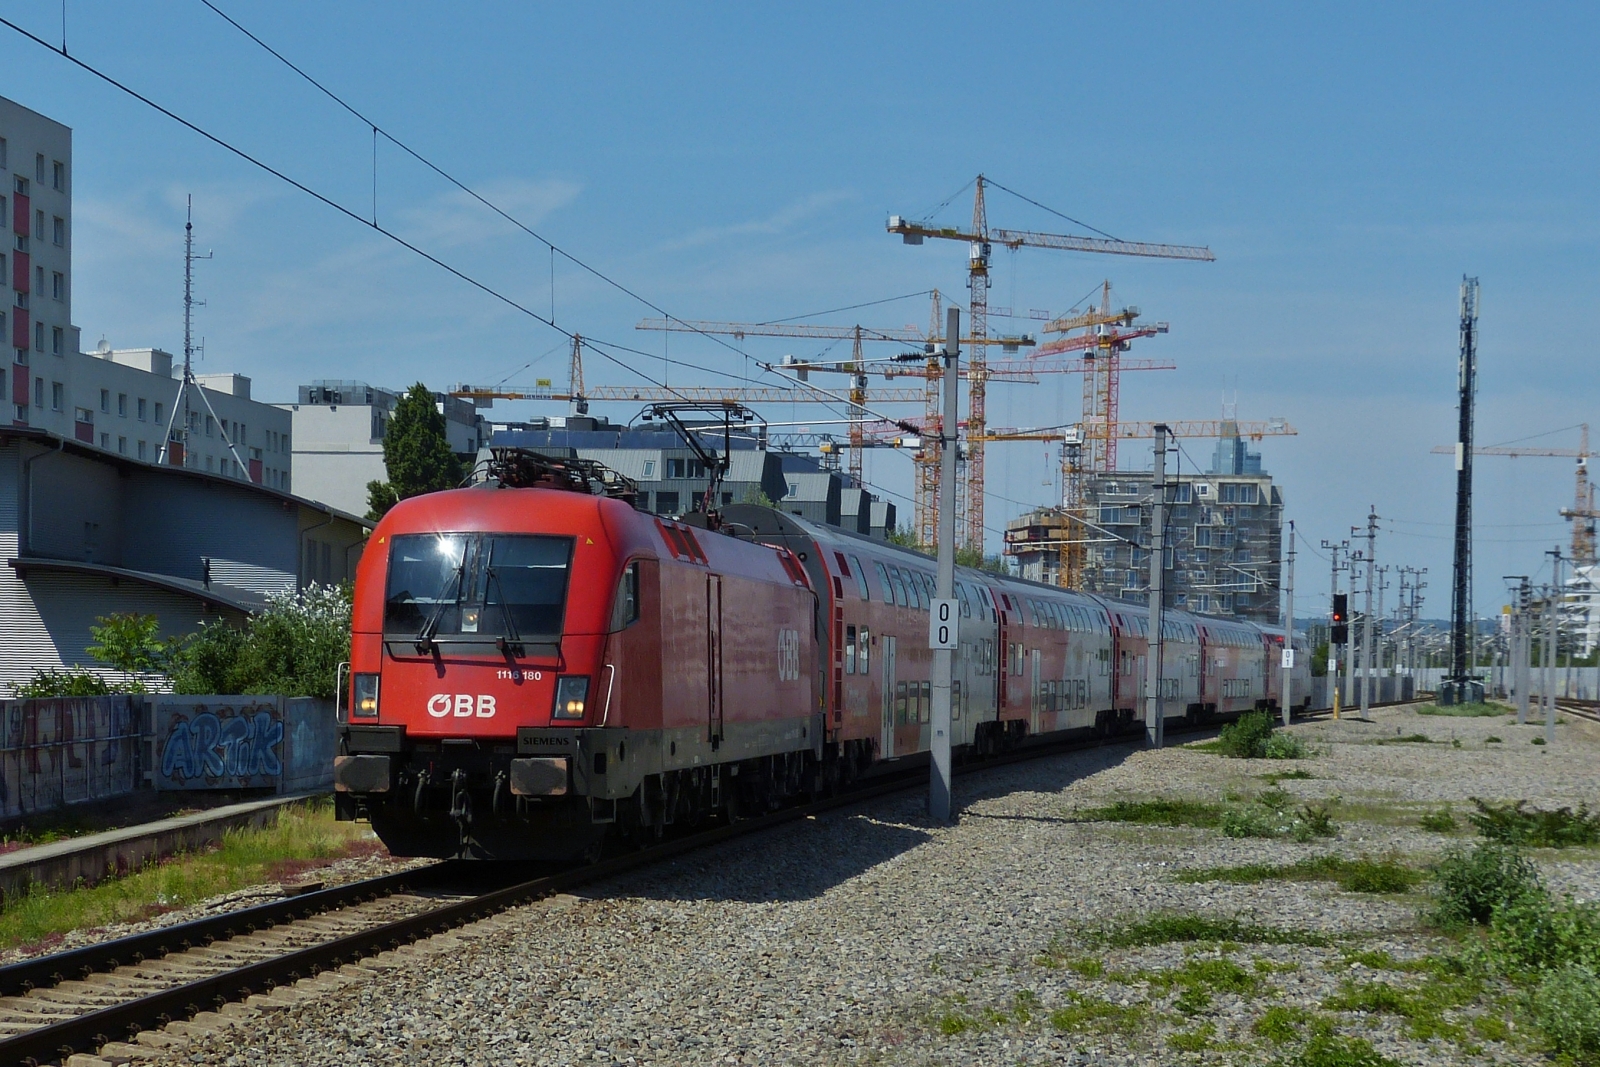 LOK 1116 180 mit ihrem Zug, als Rex 1 unterwegs nach Wien Neustadt ber Wien Meidling, aufgenommen kurz vor der Einfahrt in den Bahnhof Praterplatz.

